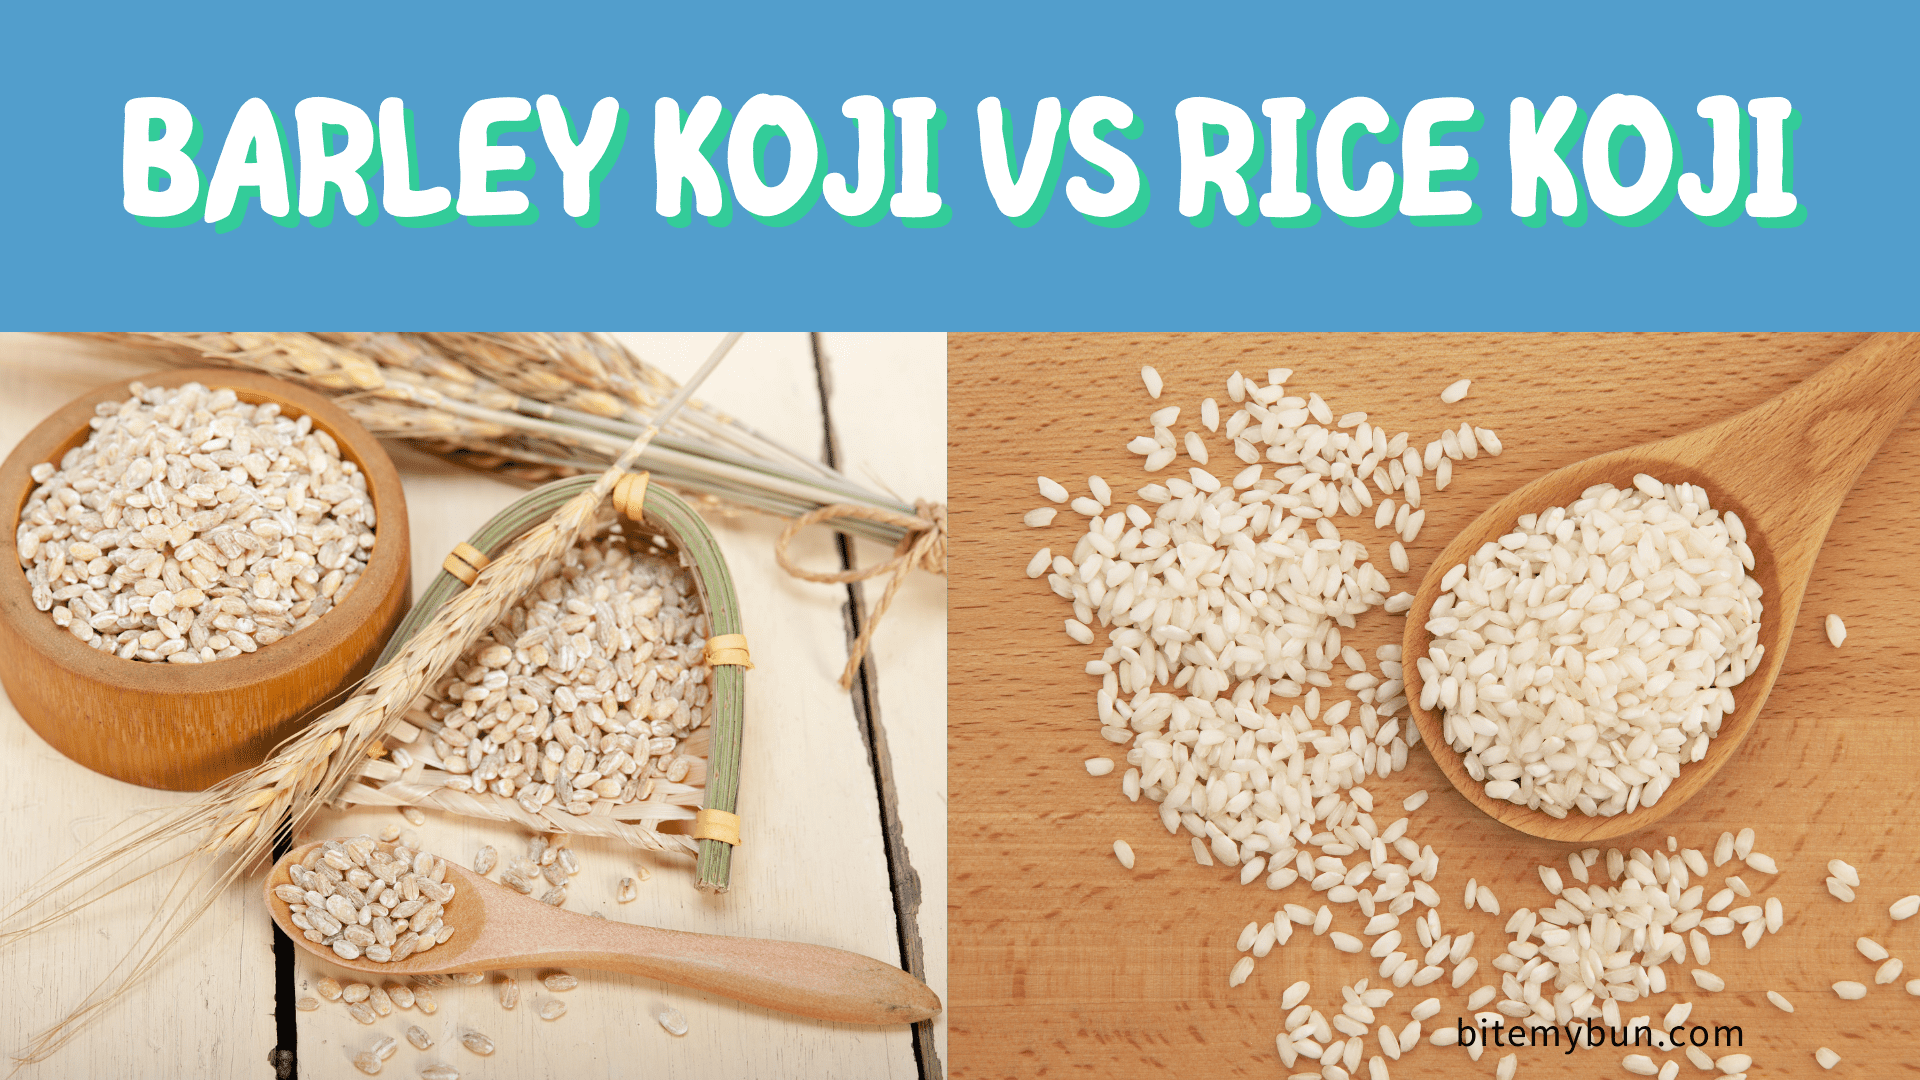 Koji de cevada vs koji de arroz | Como eles se comparam e quando usar o que